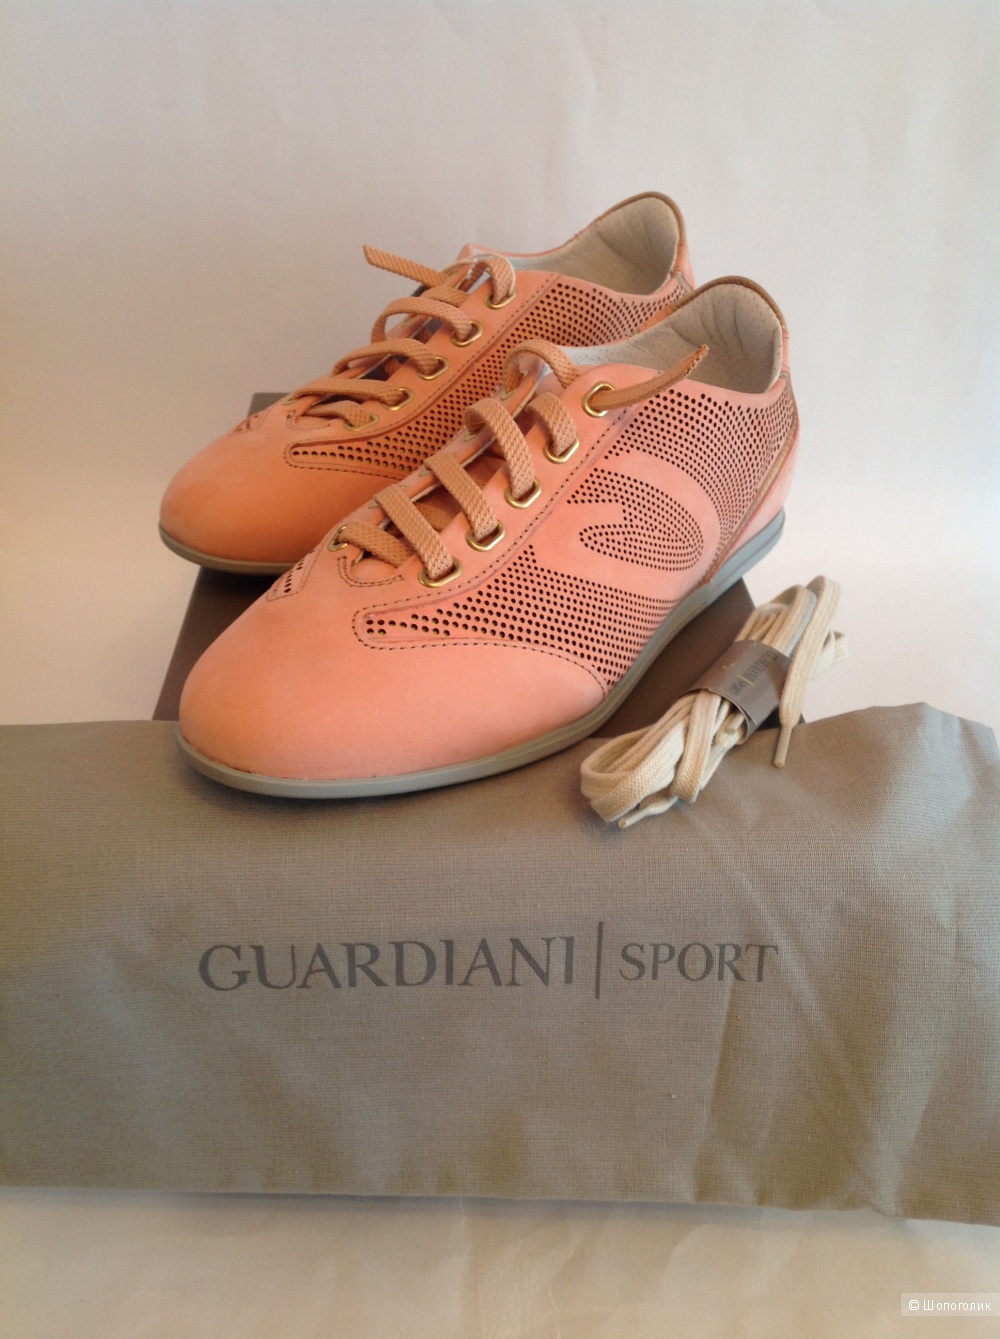 Суперстильные кроссовки GUARDIANI SPORT Италия новые размер 37-37,5